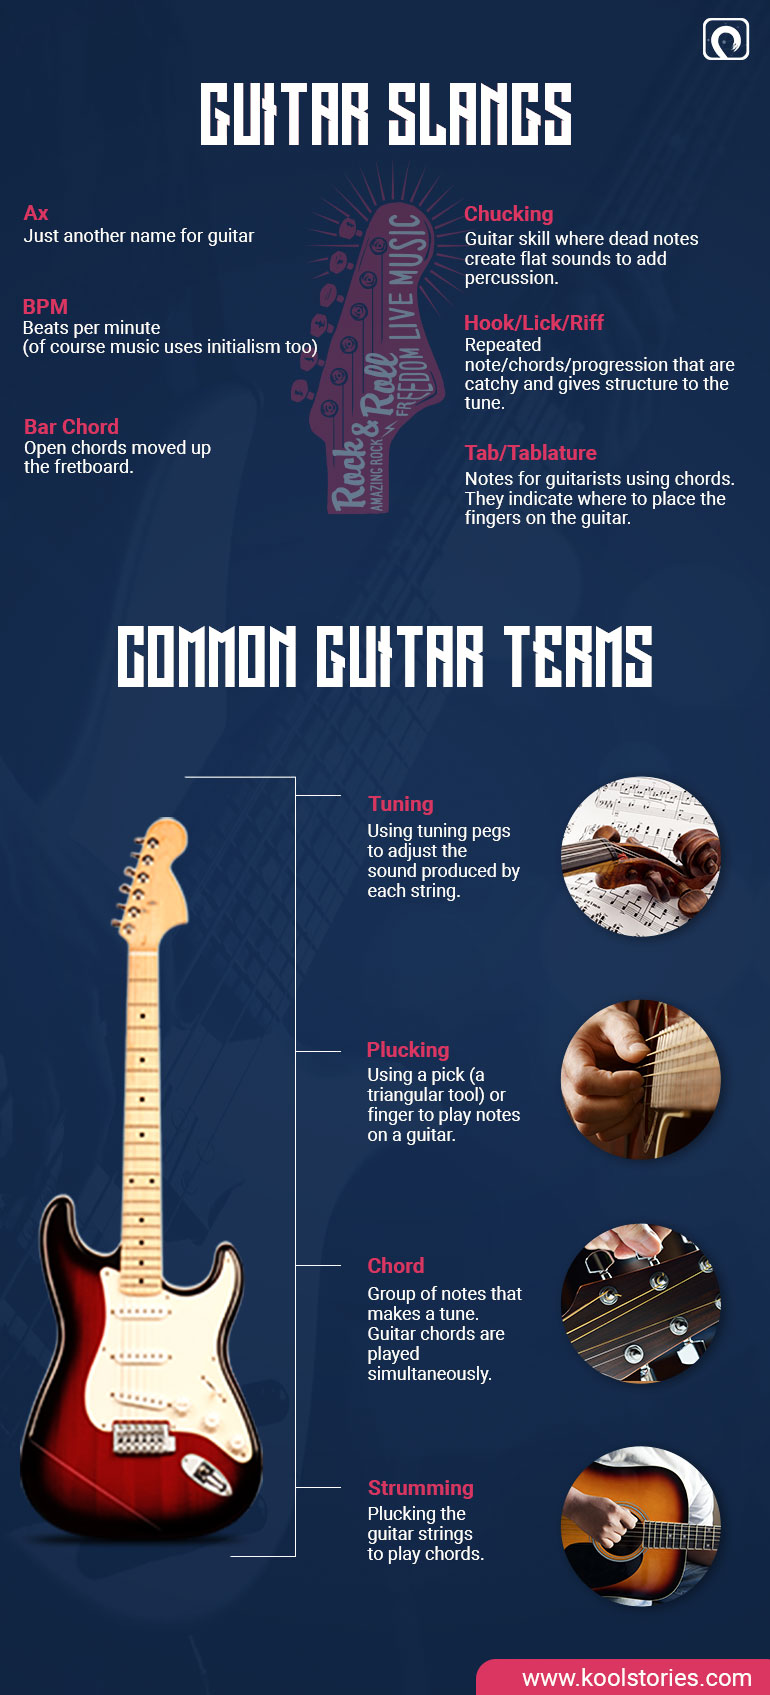 Basic guitar terminology and slangs